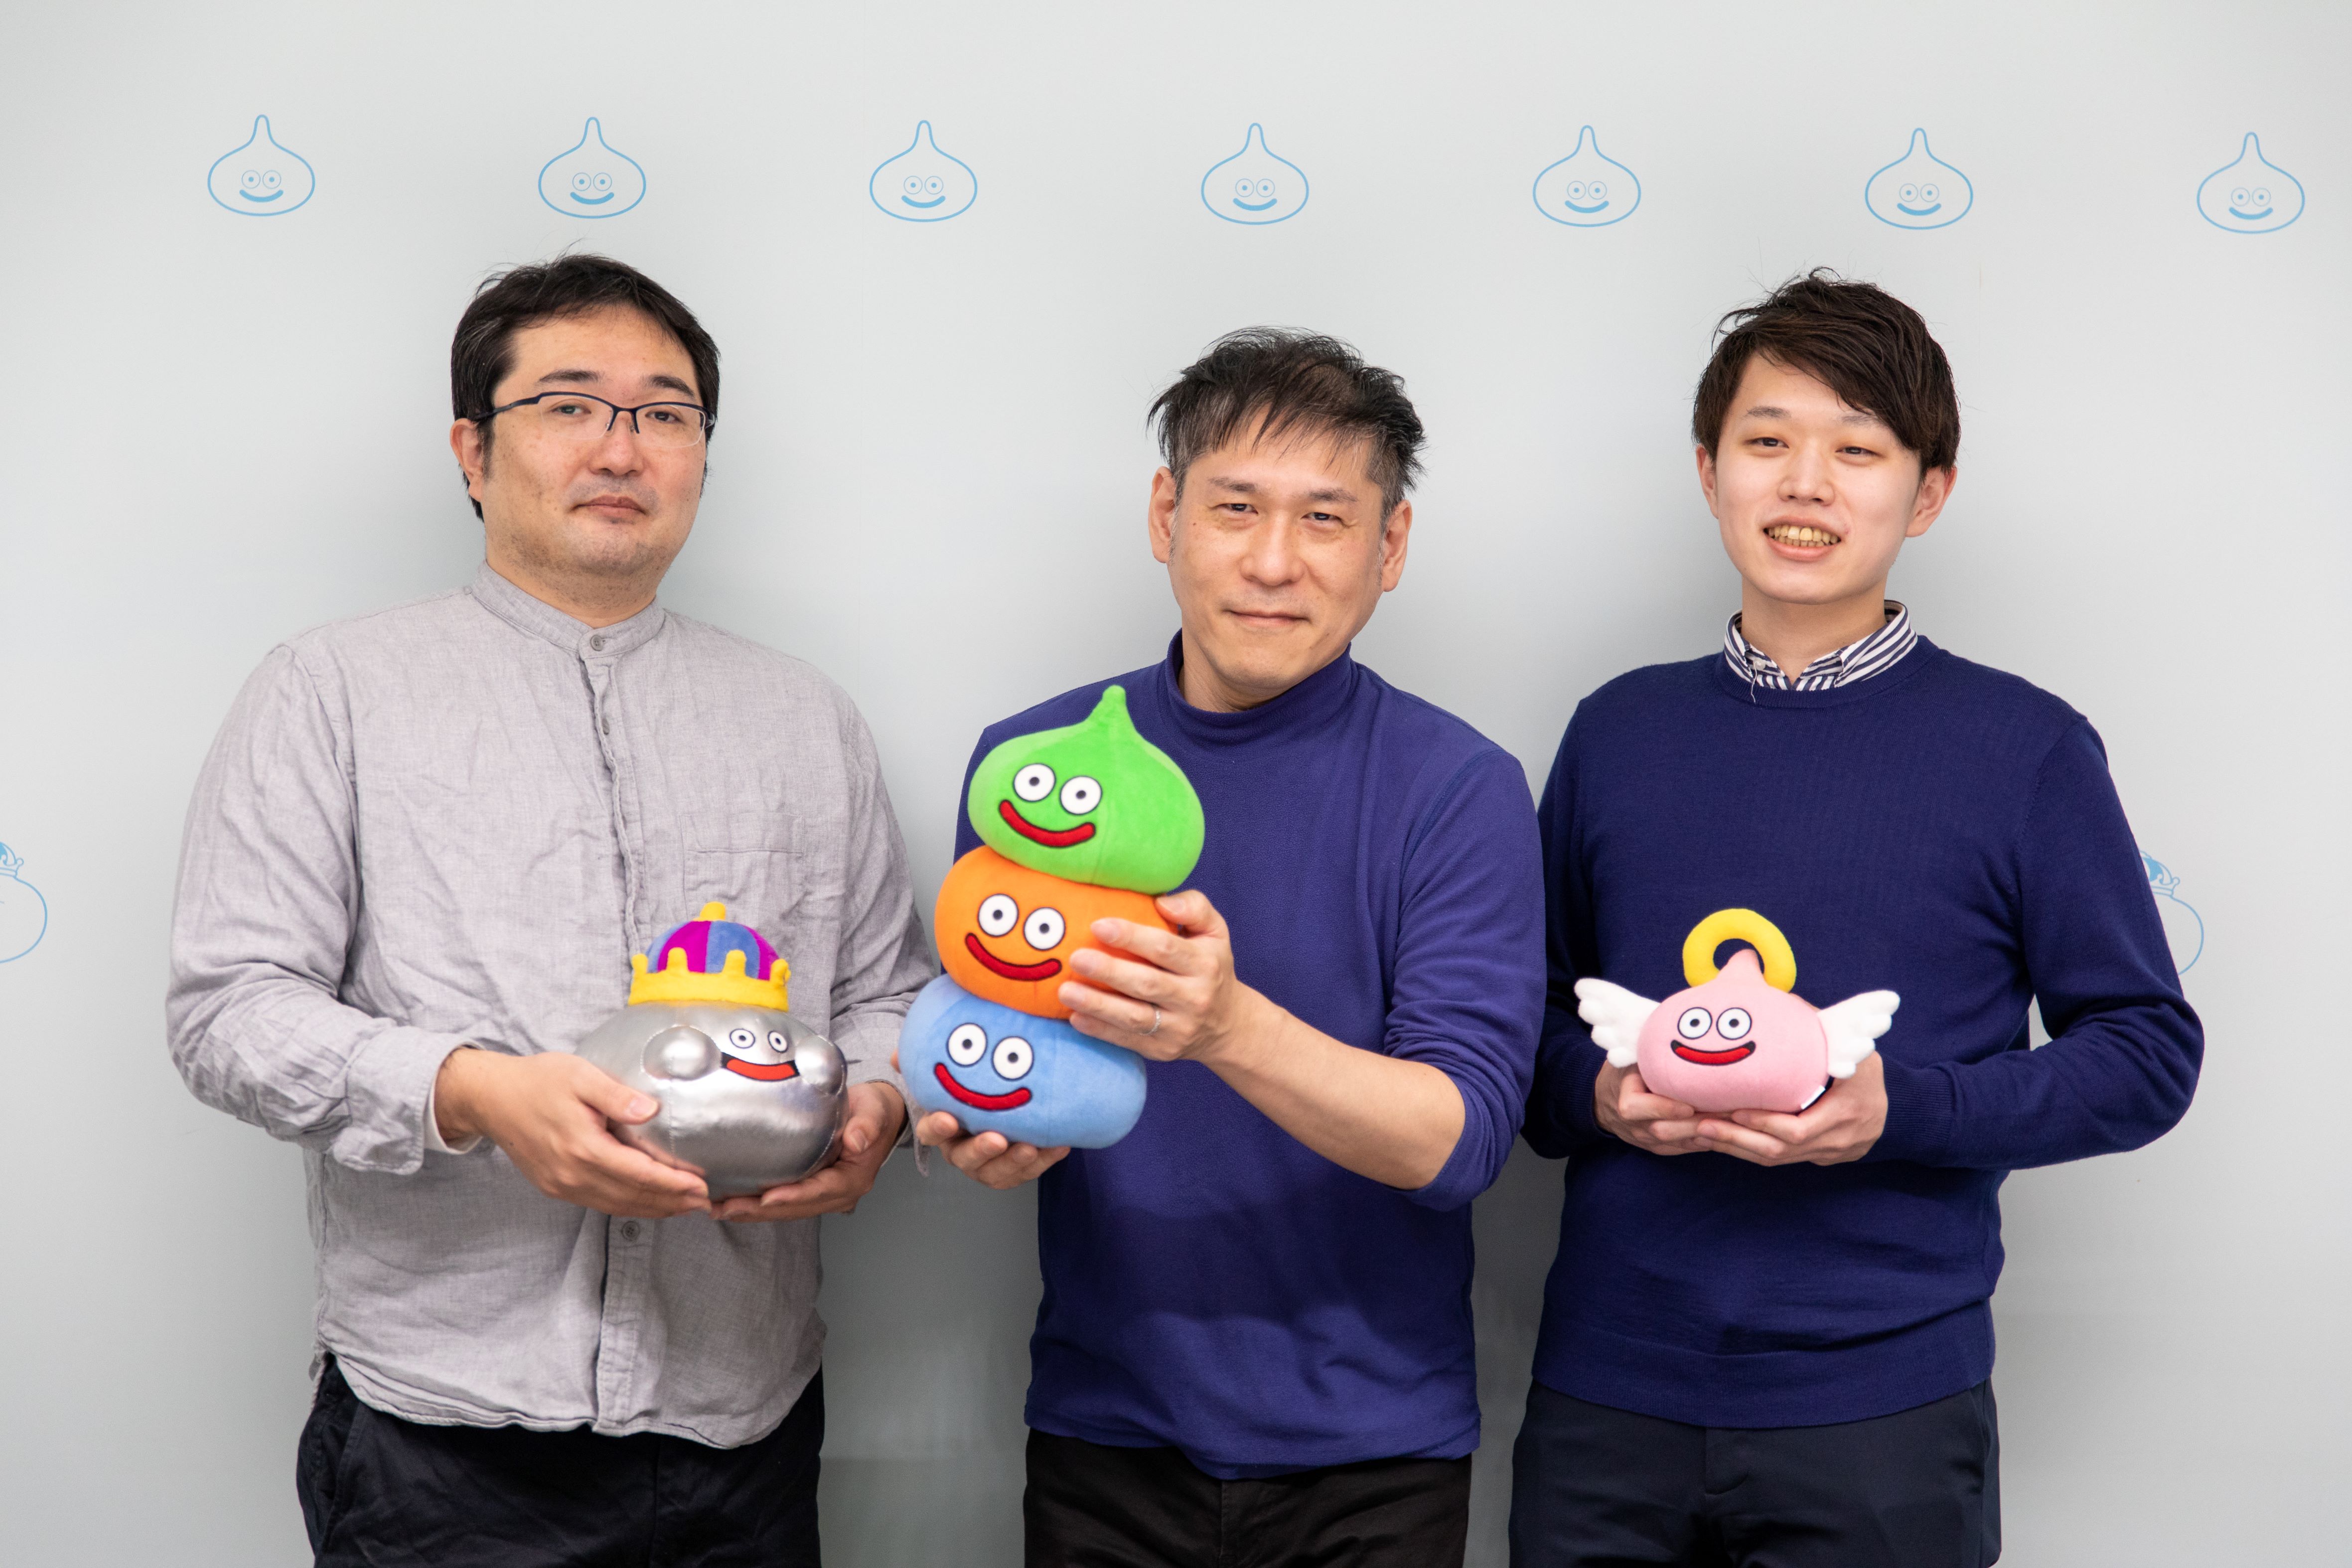 Pictured from left: Taro Shimada, Yasutaka Nakata, and Yuki Miyamoto 